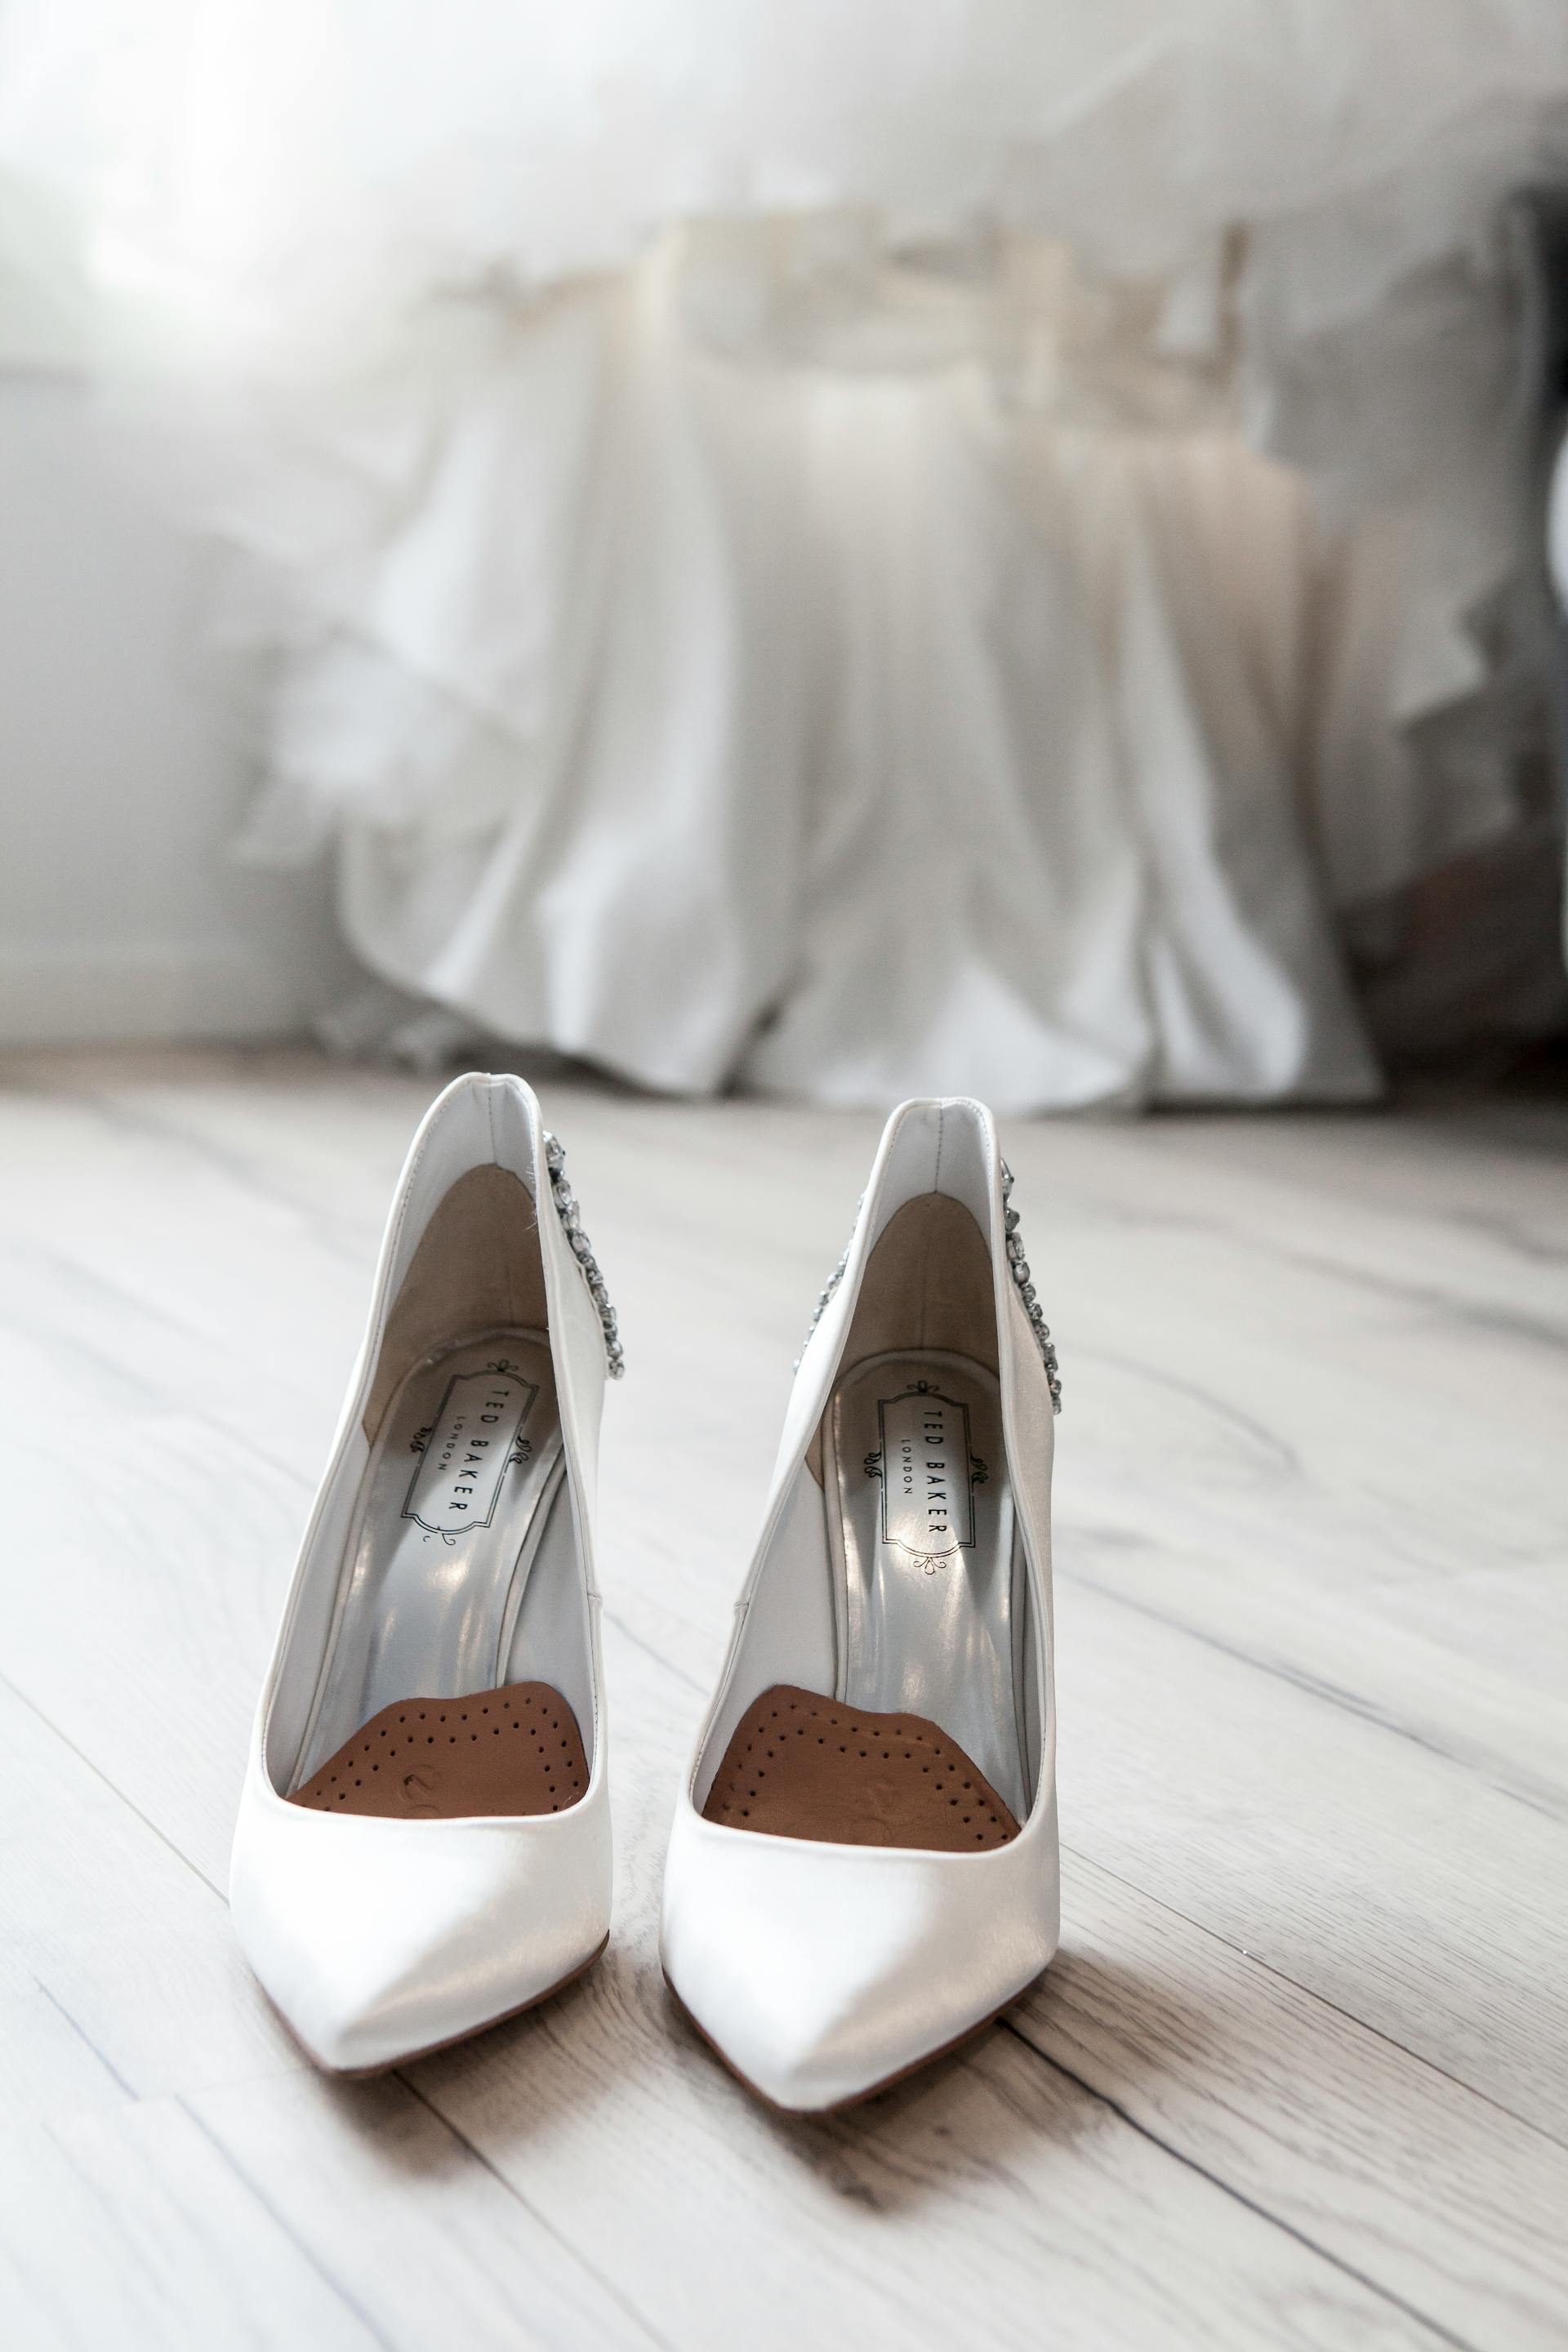 Chaussures de mariée blanches | Source : Pexels